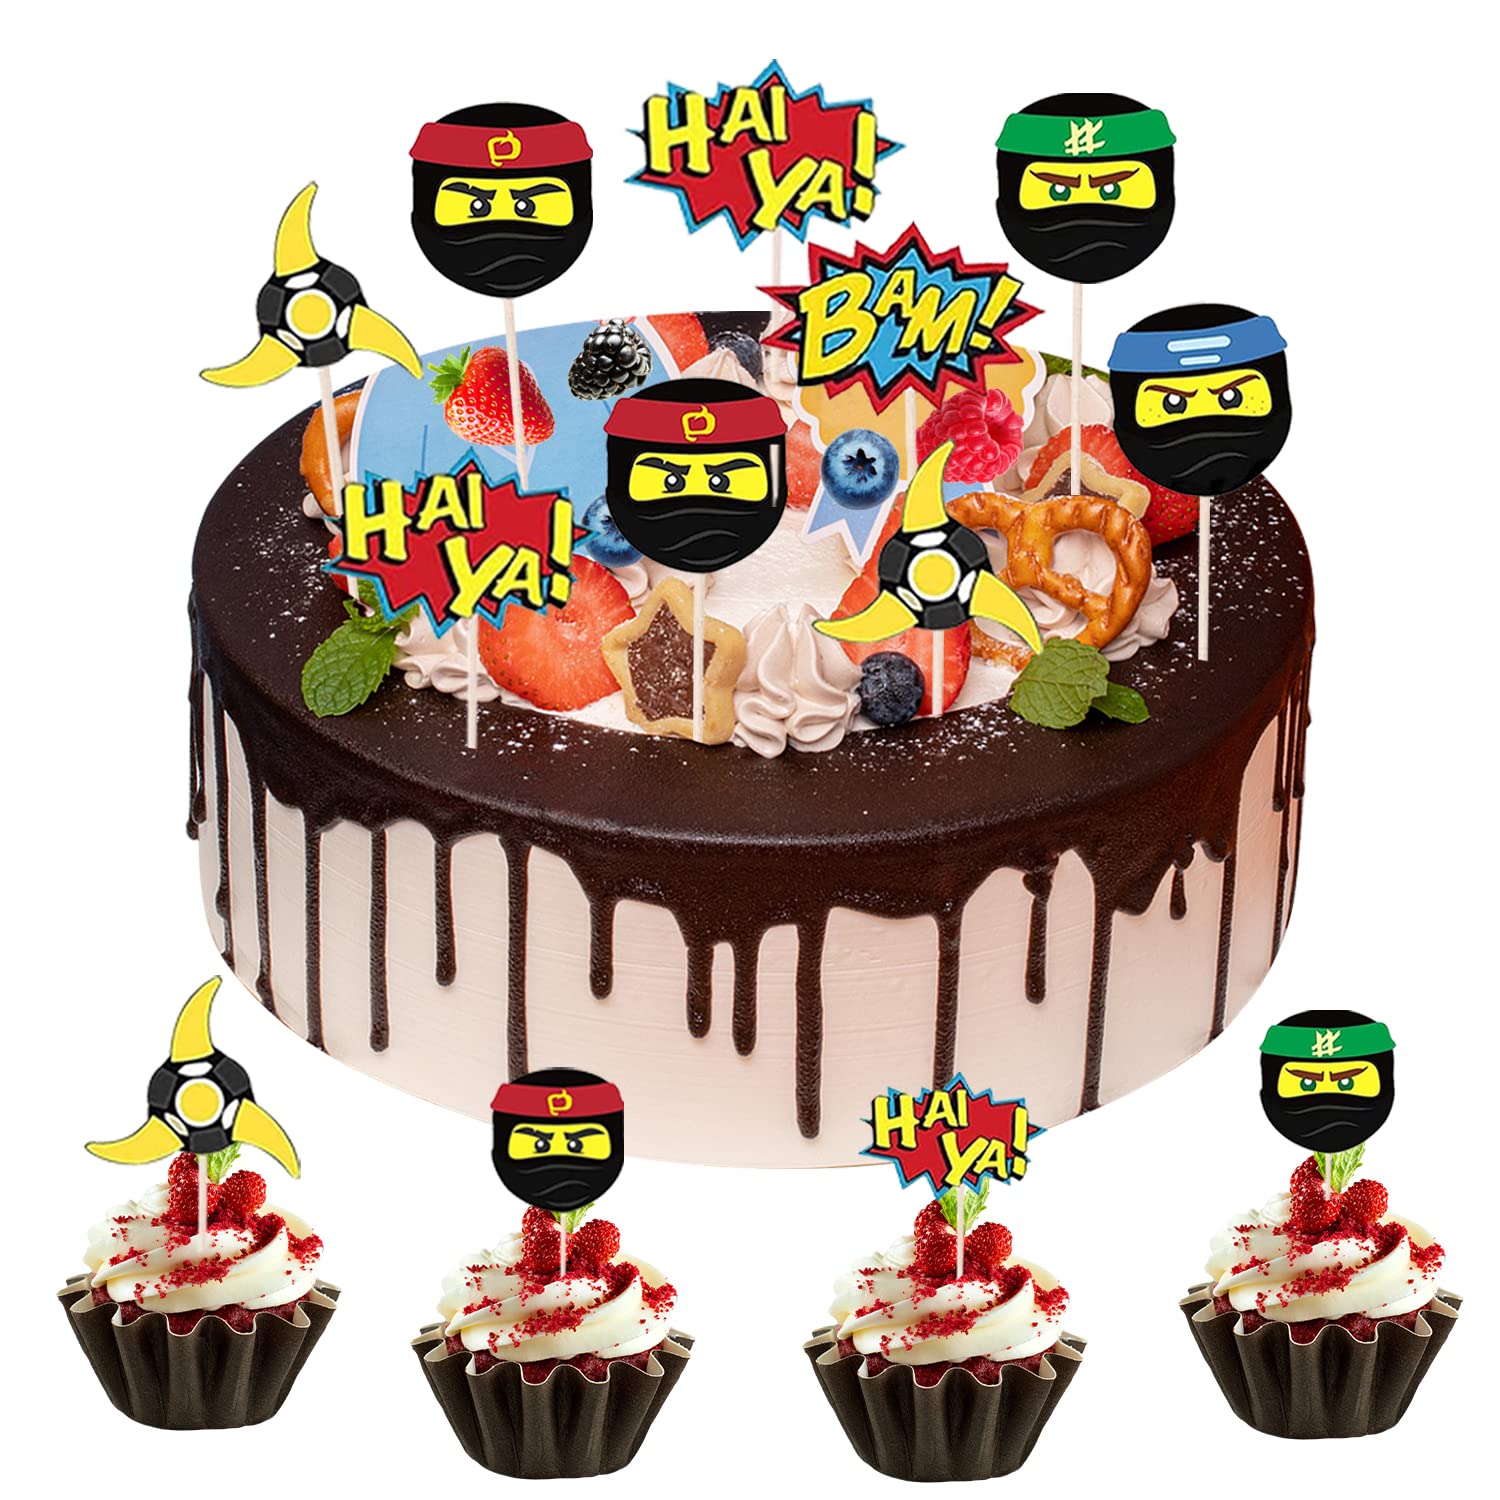 Ninja Star cake - Decorated Cake by KathyBoogaCakes - CakesDecor